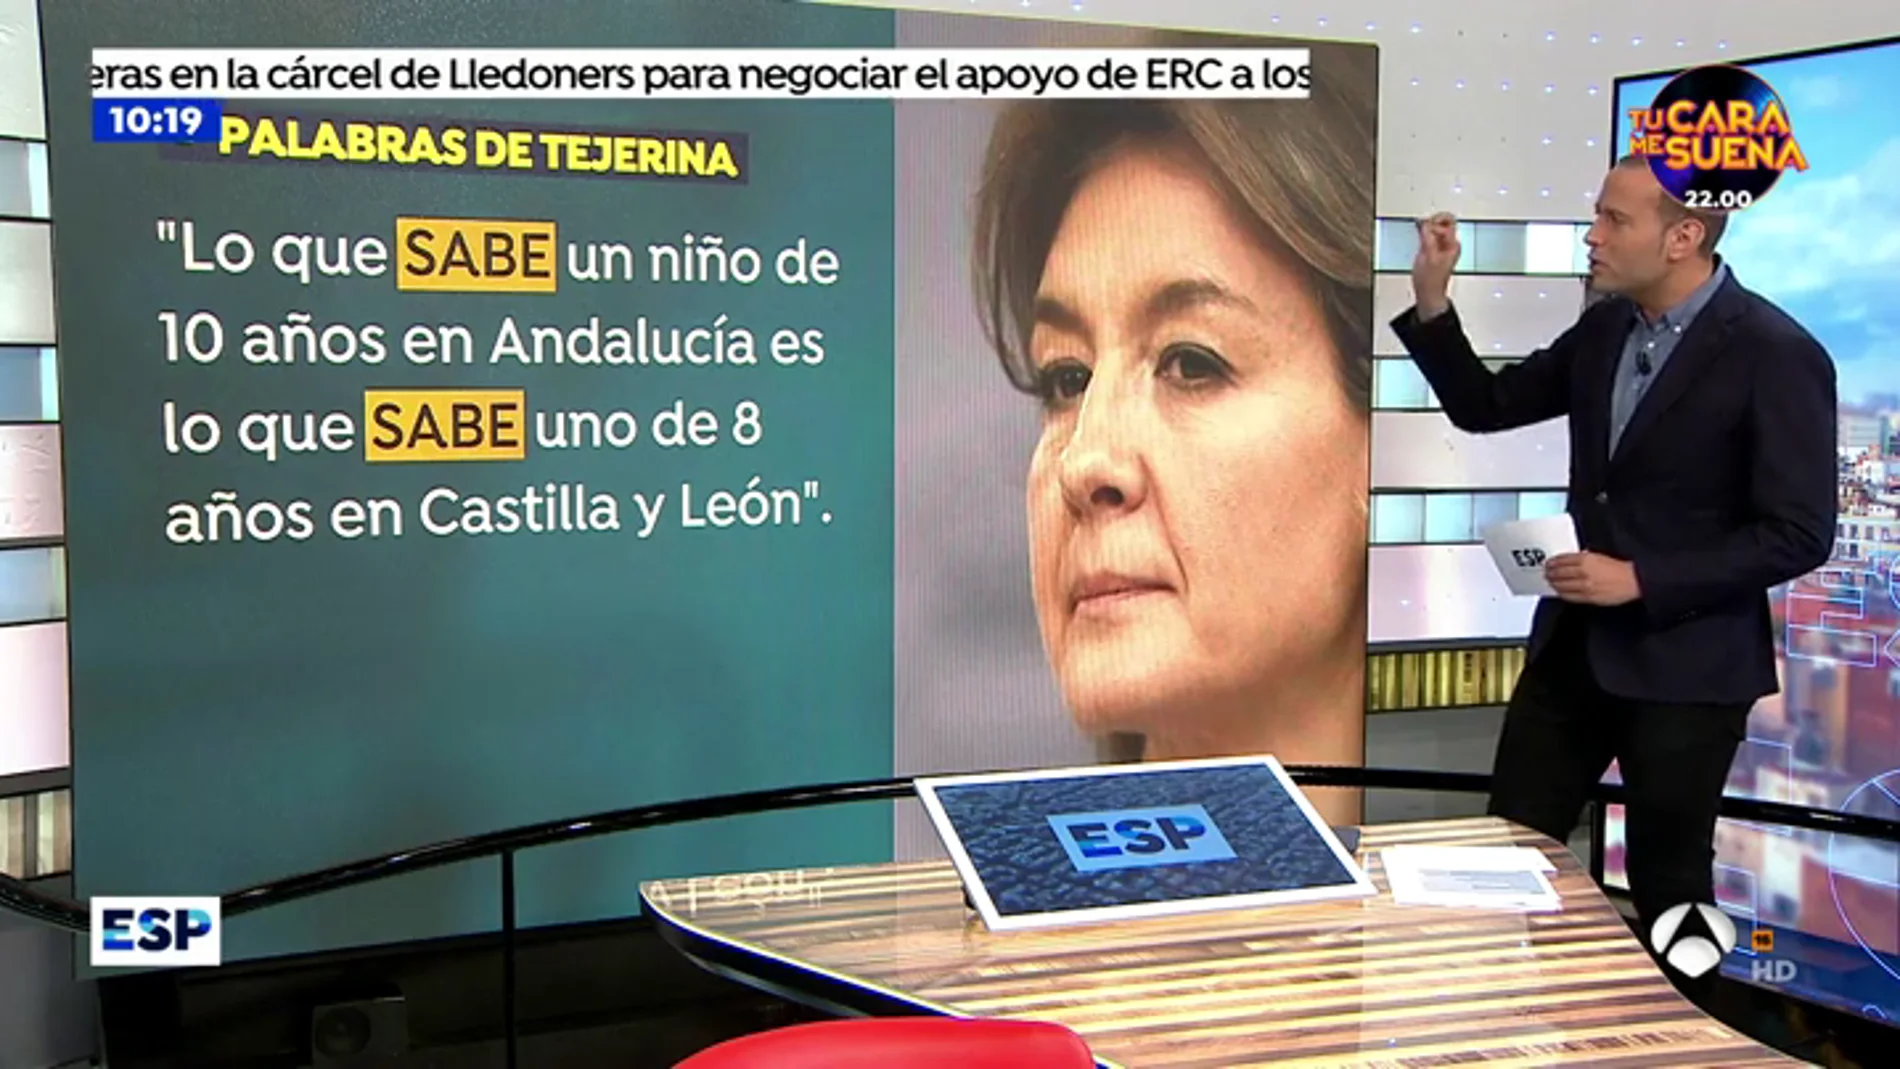 La Consejera de Educación de la Junta de Andalucía: "Hay diferencias entre las comunidades porque el informe no cubre todas las cuestiones que debería"